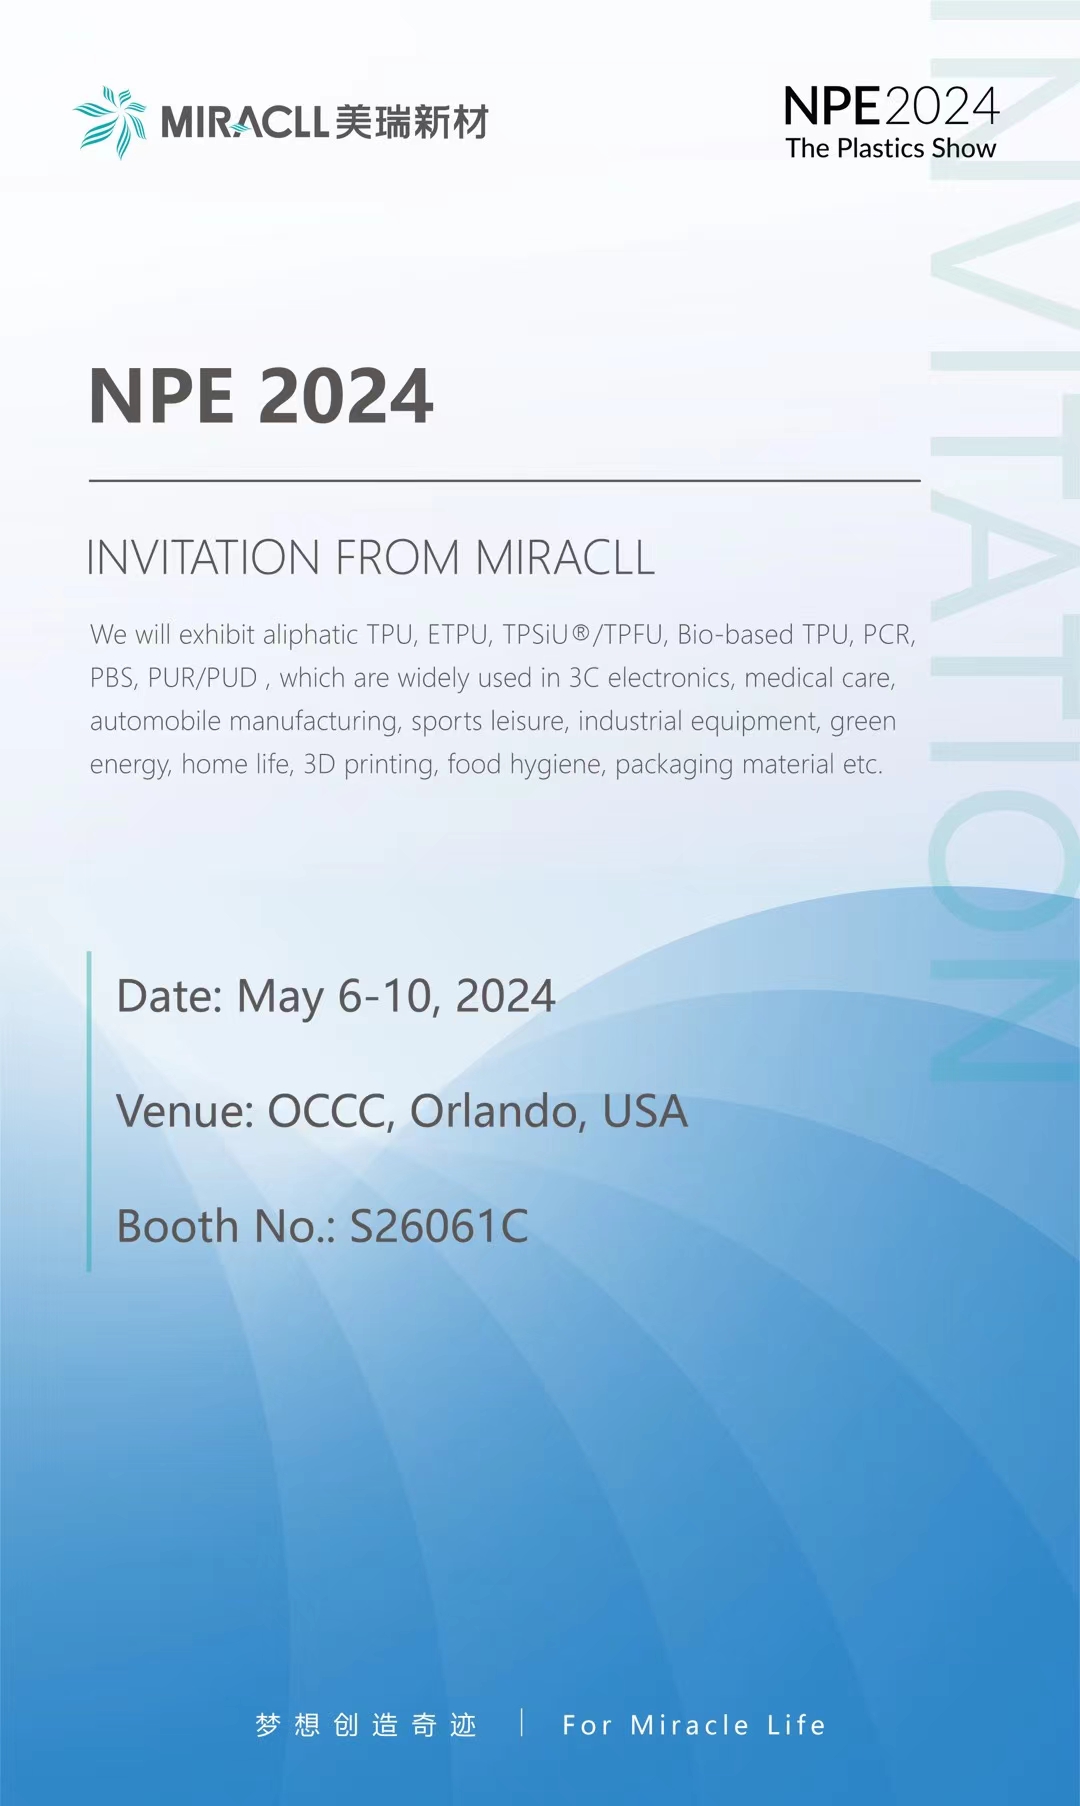 Miracll Chemicals nodigt u uit om deel te nemen aan NPE 2024